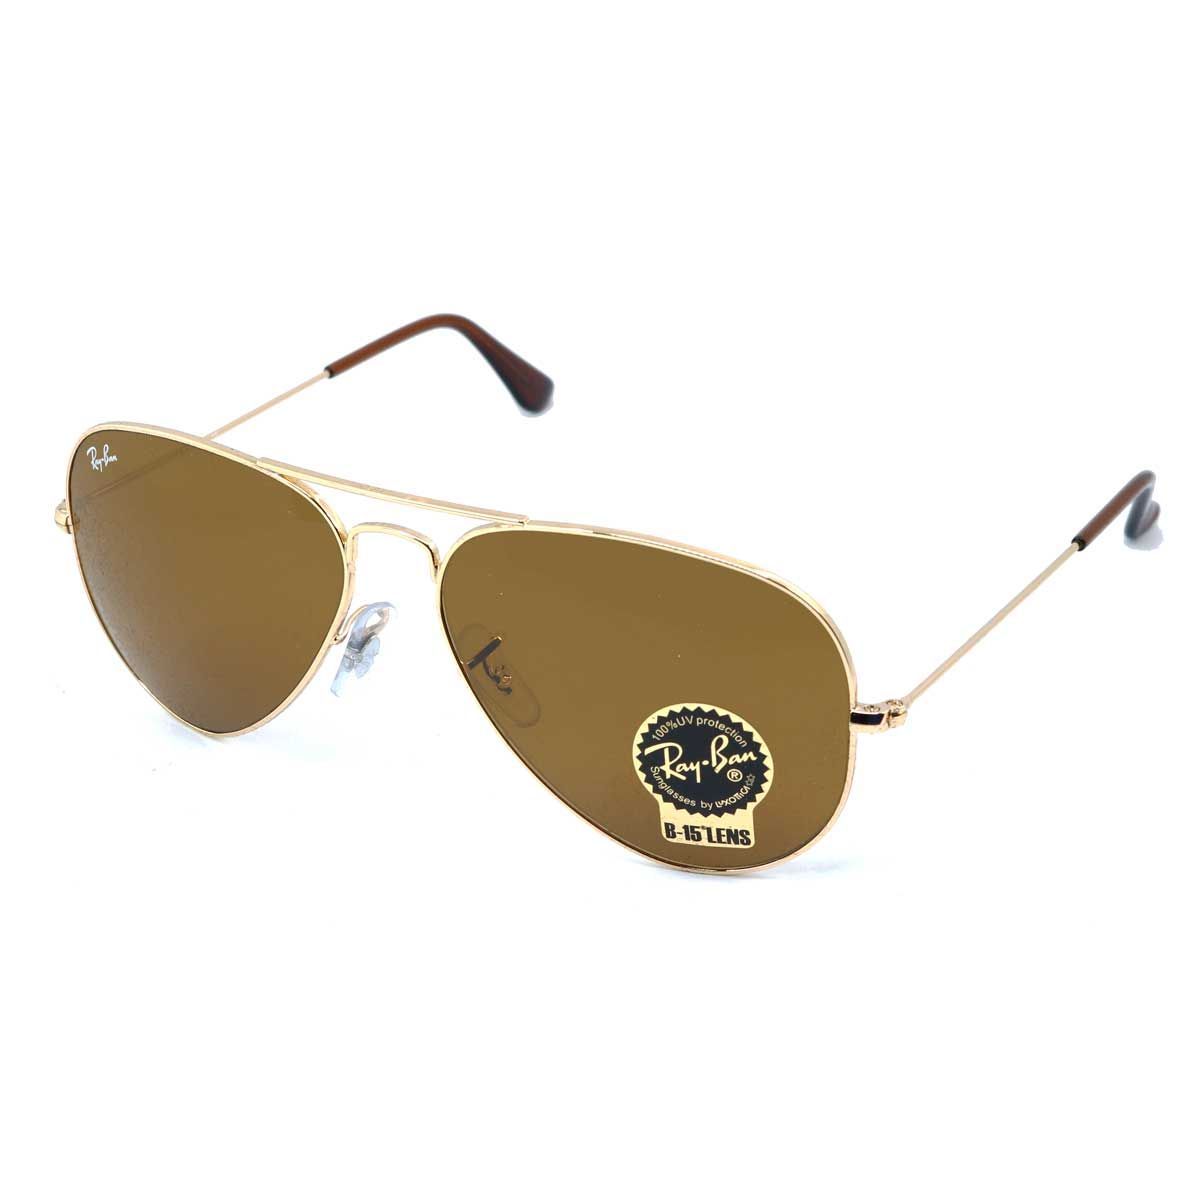 Aviator Sunglasses RB3025 001 33 - size 55